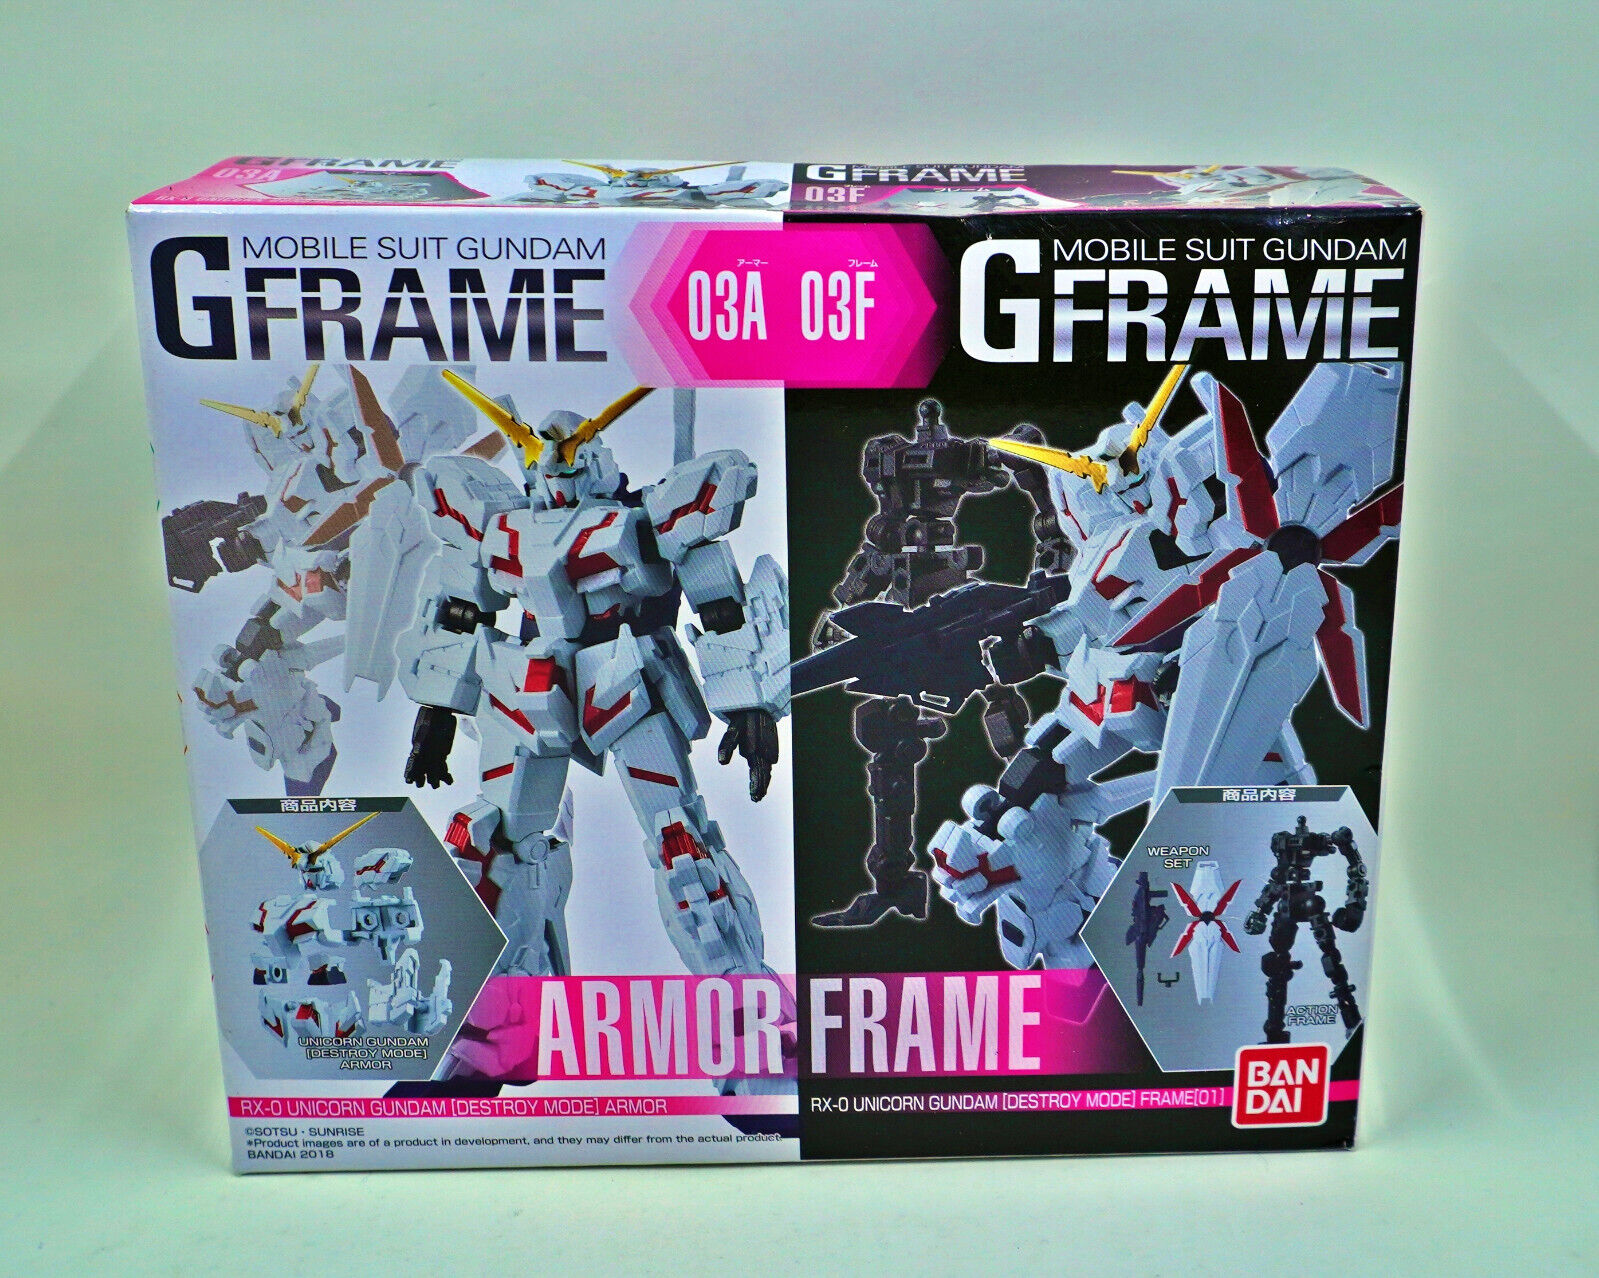 Bandai Mobile Suit Unicorn Gundam G Frame 03A 03F New Sealed Box